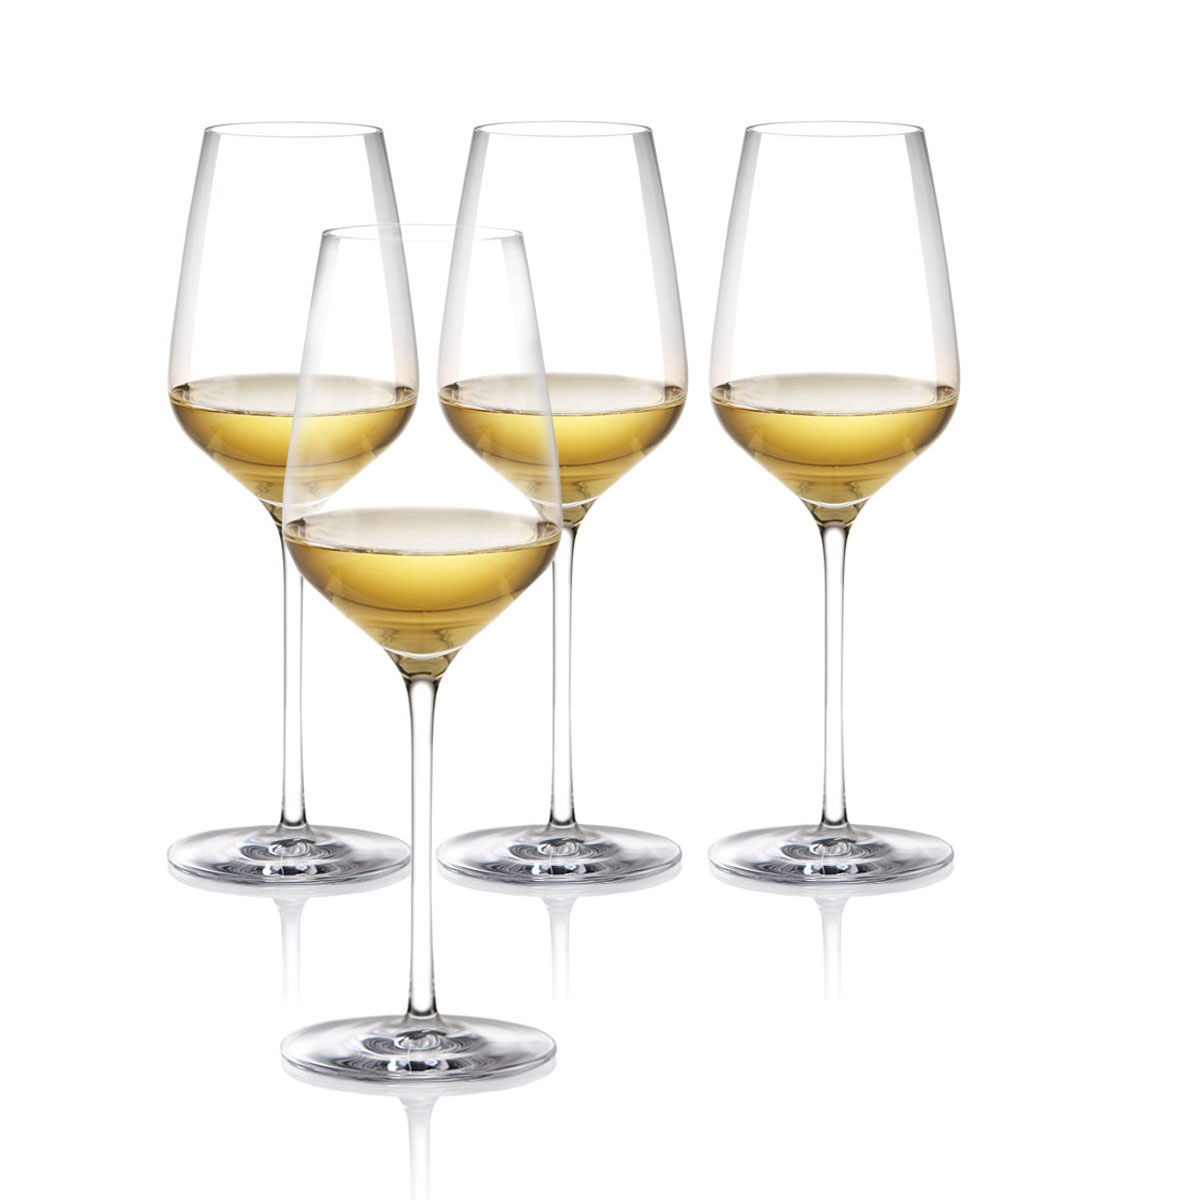 Cashs Ireland Grand Cru White Wine Glasses Gift Set, 3+1 Free